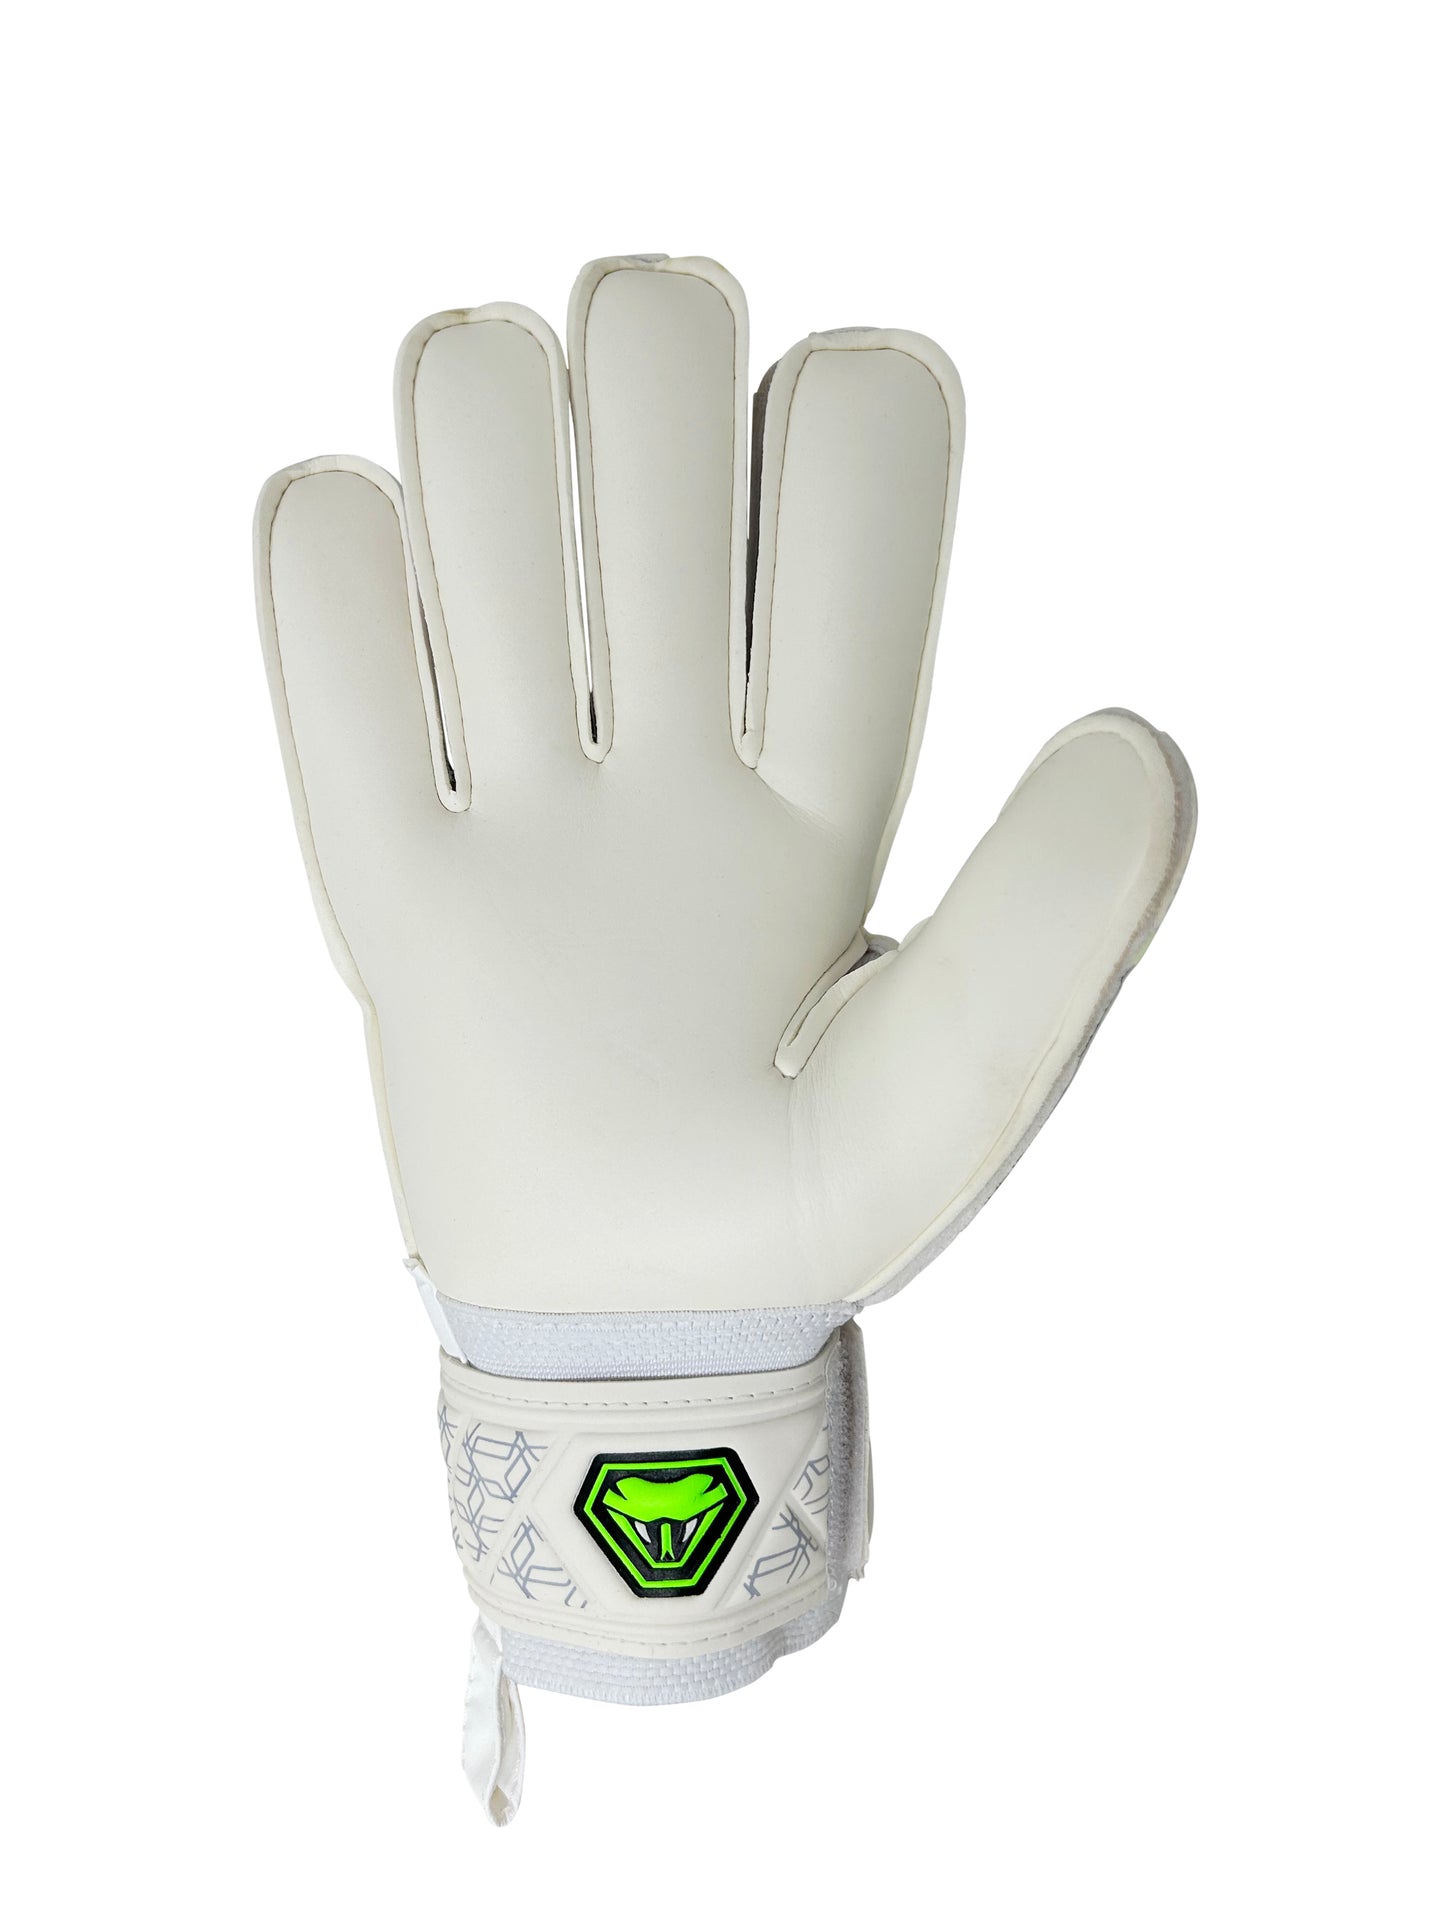 reflex goalie gloves white grip palms